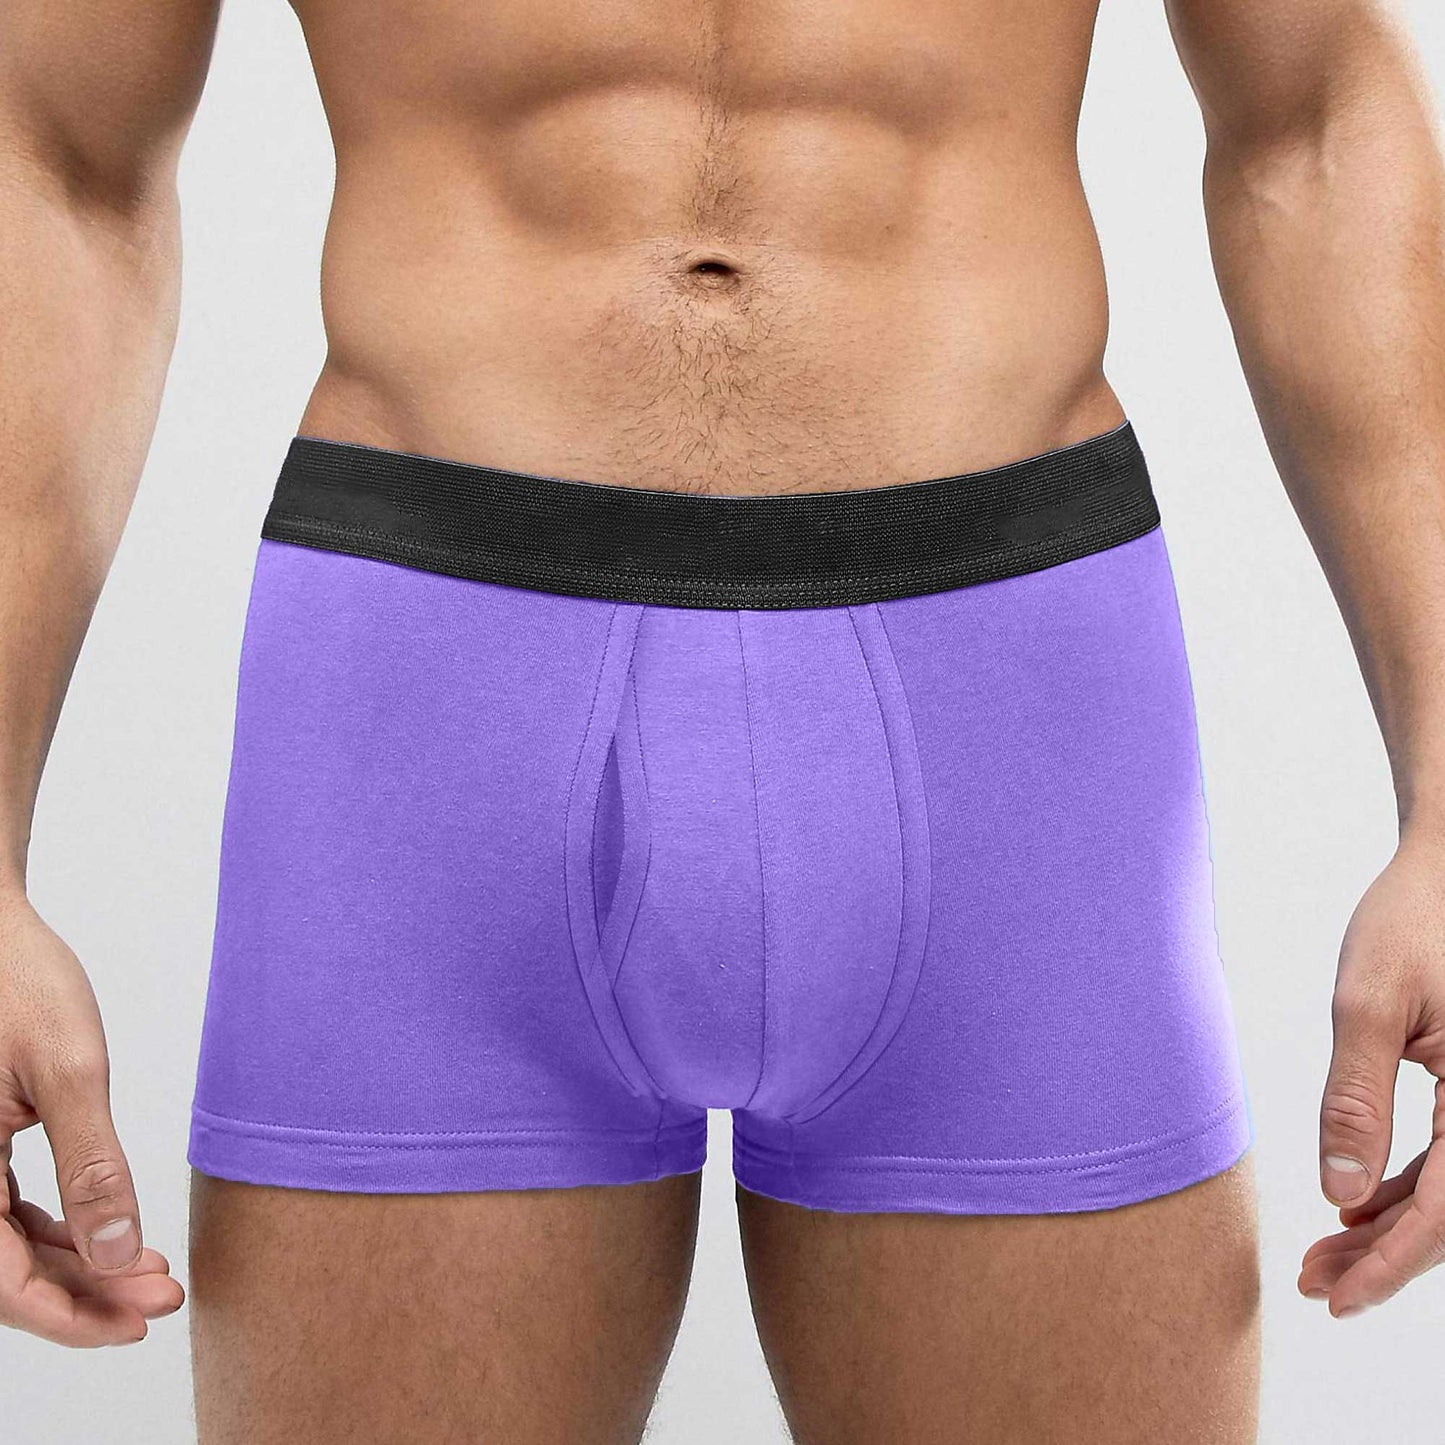 Men's Denver Solid Design Boxer Shorts Men's Underwear Minhas Garments Purple S 